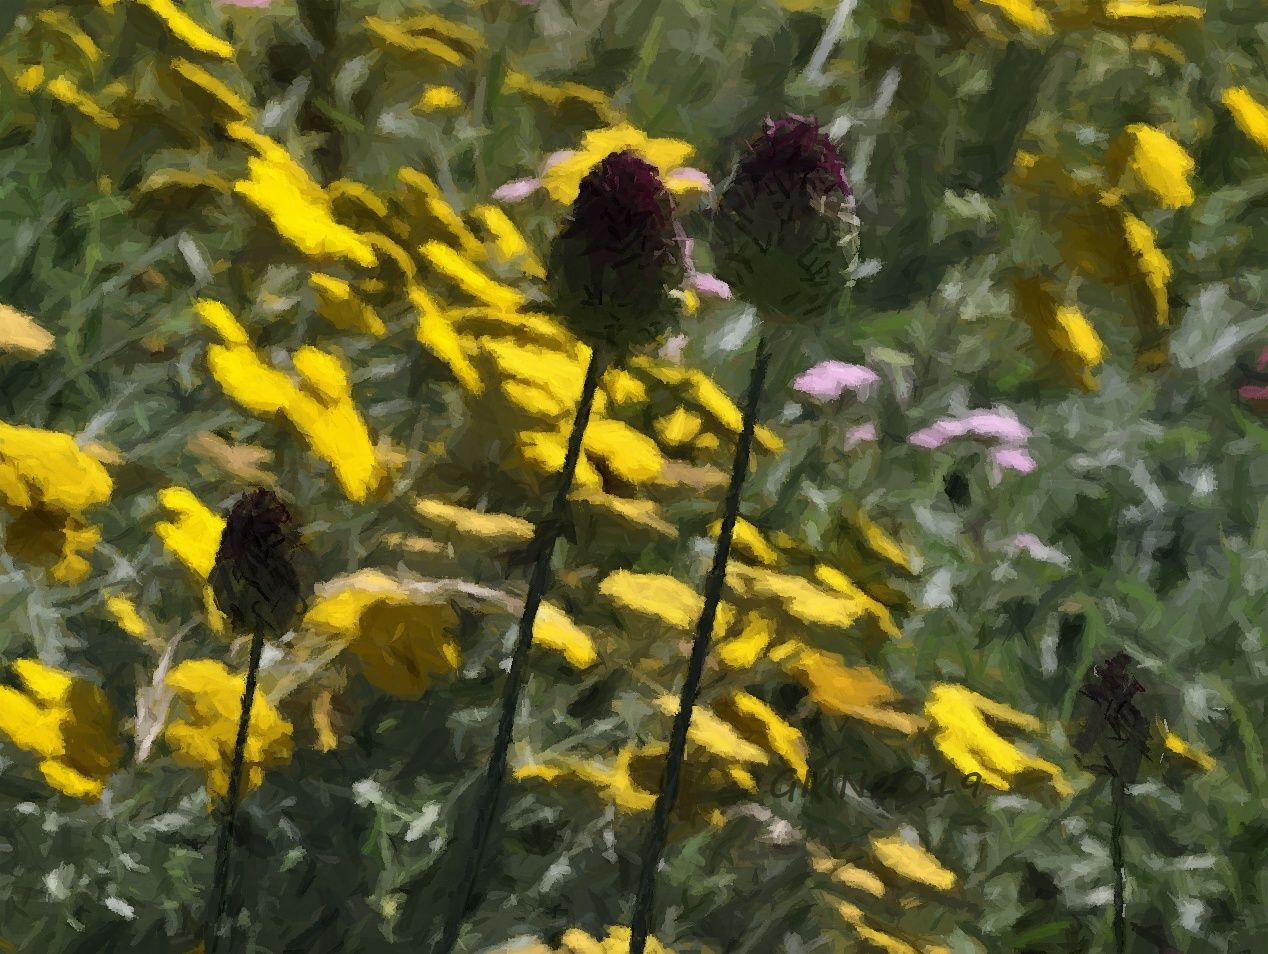 Purpur Kugellauch auf der Sommerwiese